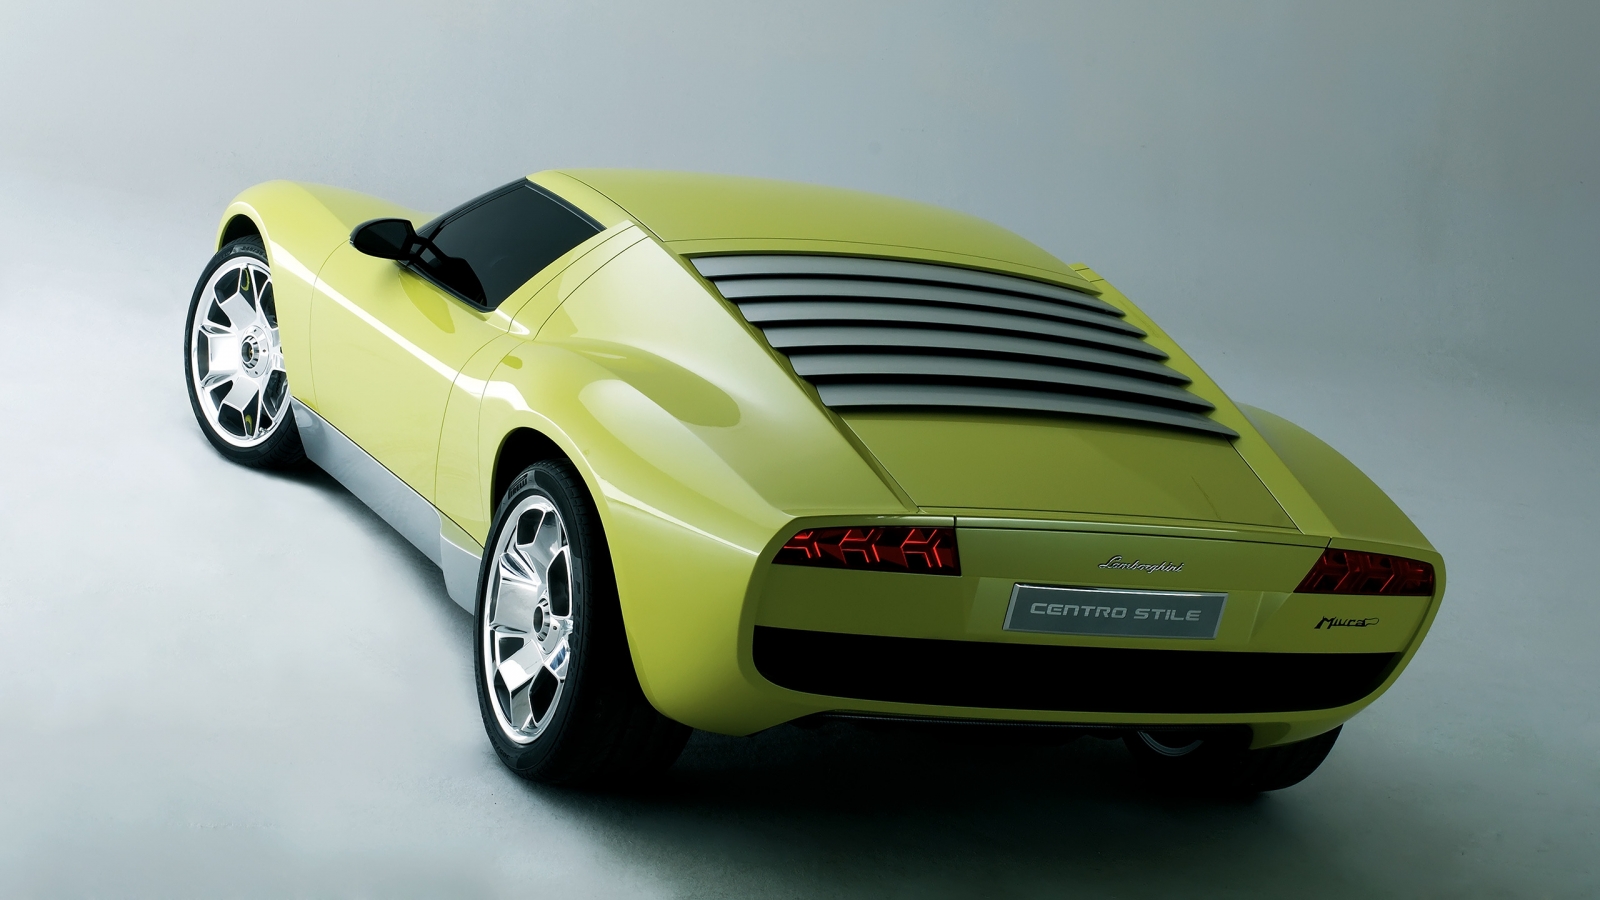 Lamborghini Miura Concept Rear for 1600 x 900 HDTV resolution